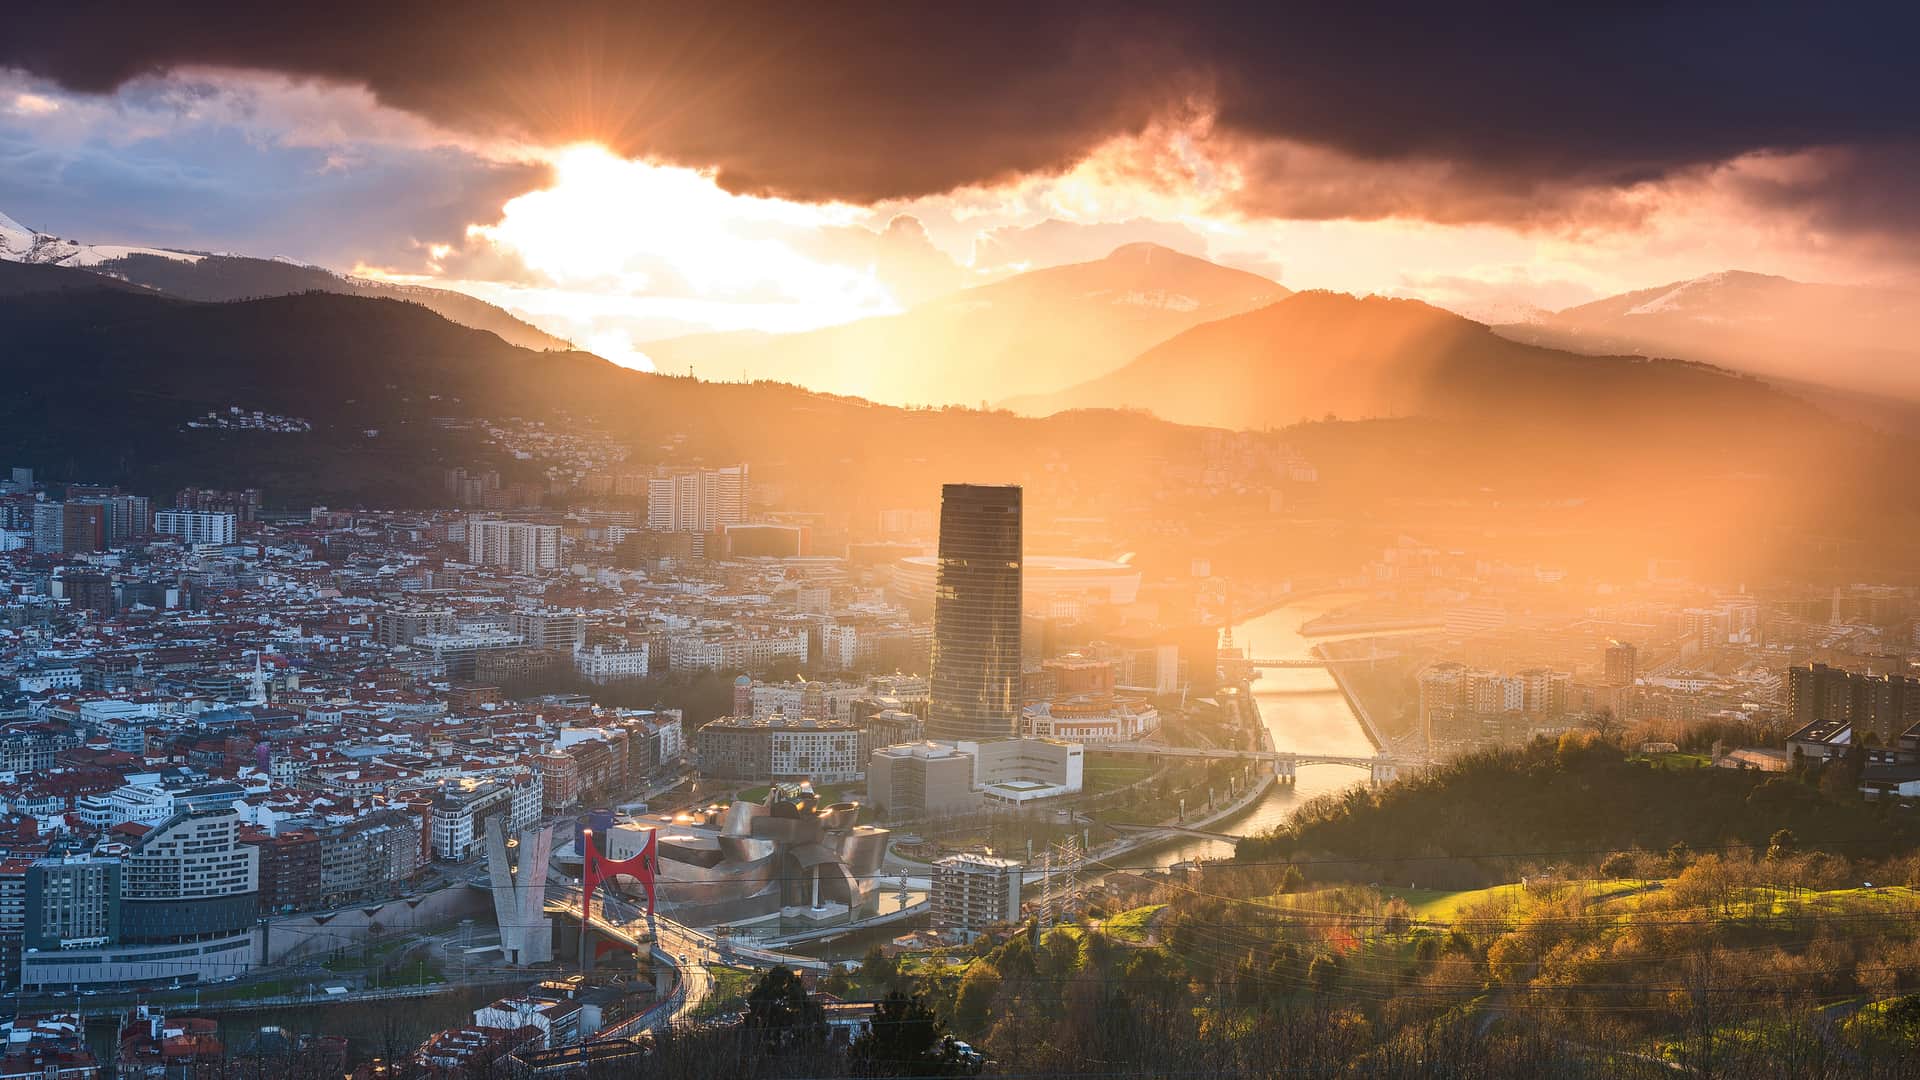 Vista panorámica de la ciudad vasca de Bilbao donde esta disponible la compañía telefónica orange